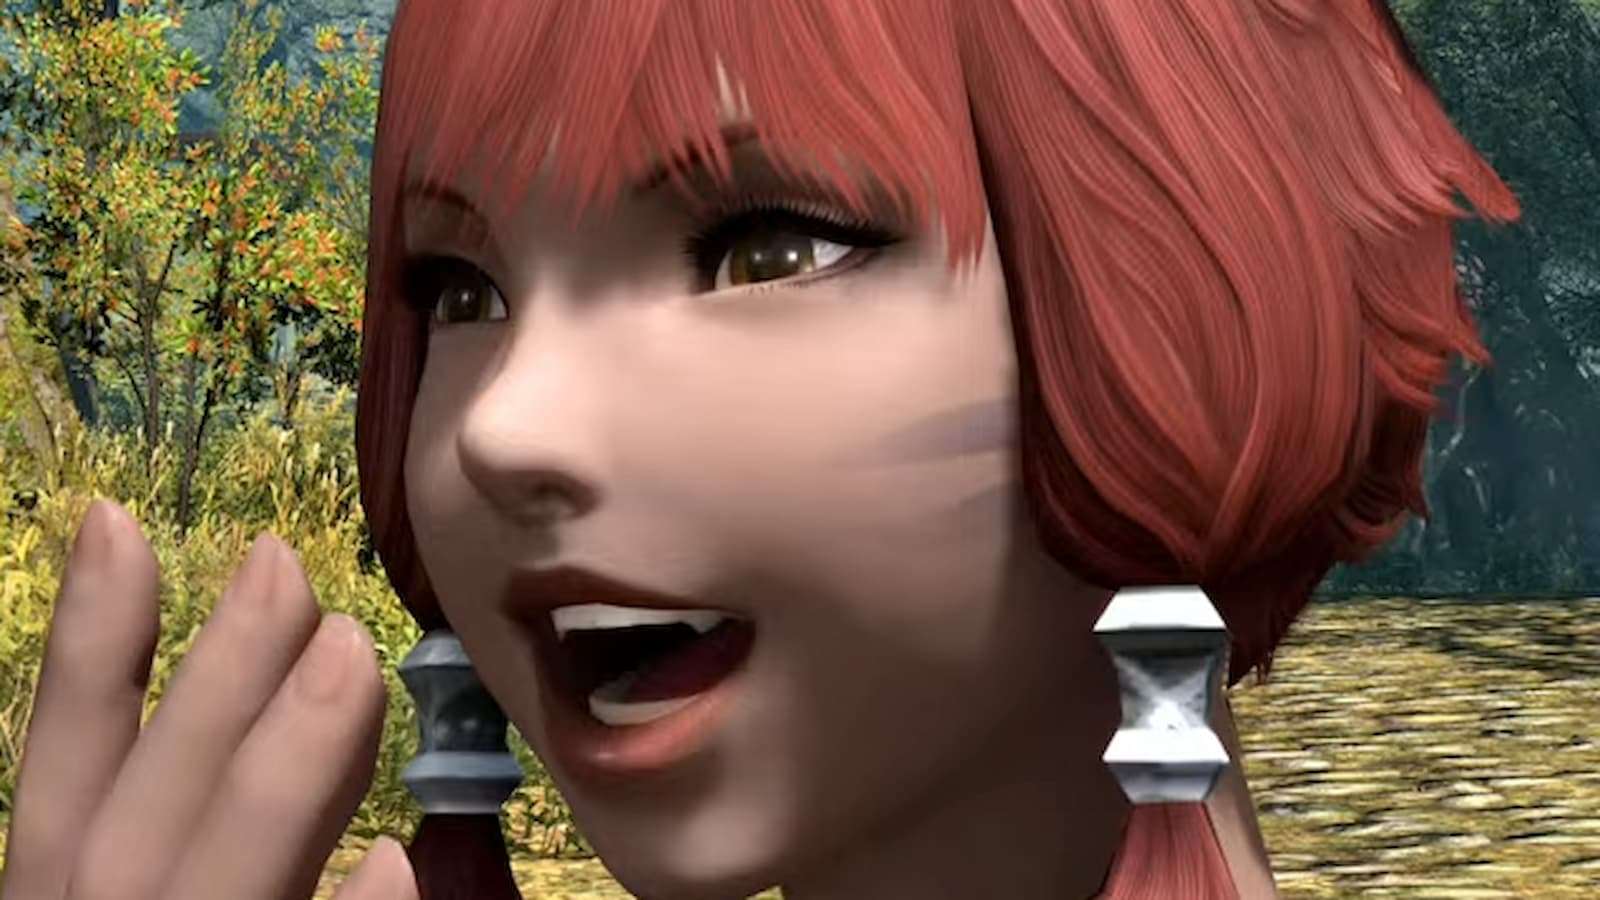 Final Fantasy 14, herkes onlardan nefret ettiği için karakter dişlerindeki değişiklikleri düzeltecek